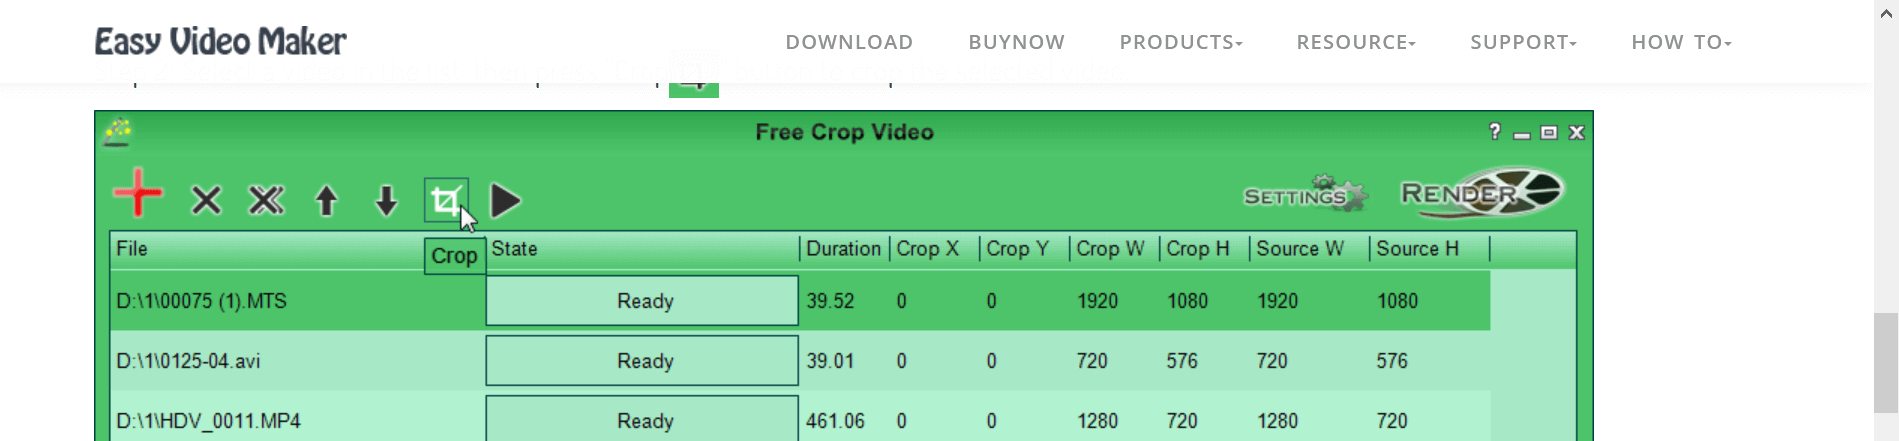 Free Crop Video Toolbar